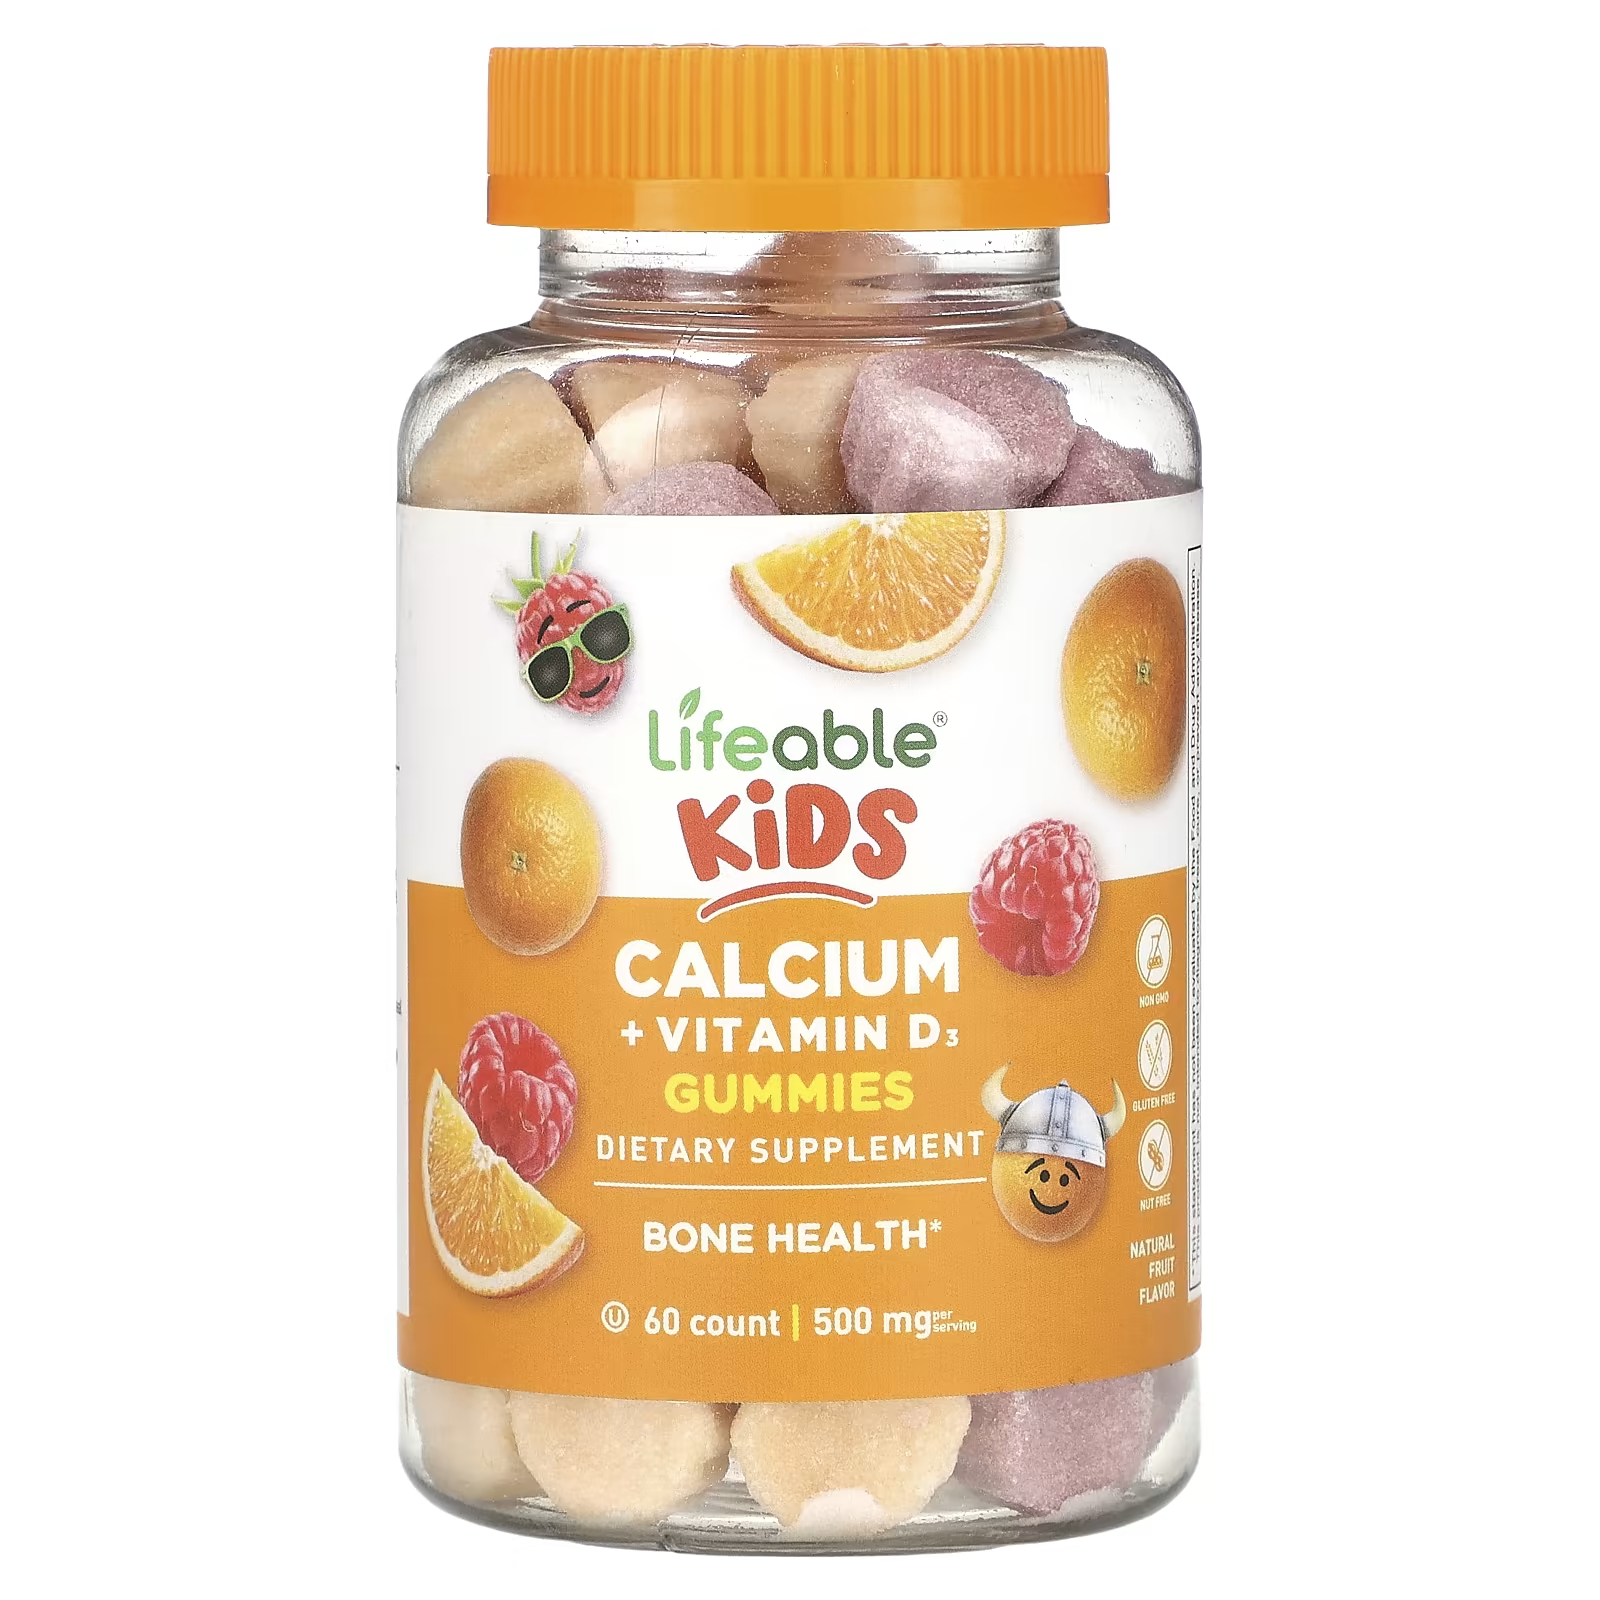 Пищевая добавка Lifeable Kids с кальцием и витамином D3, натуральные фрукты, 60 жевательных конфет пищевая добавка lifeable с кальцием и витамином d3 натуральные фрукты 60 жевательных конфет